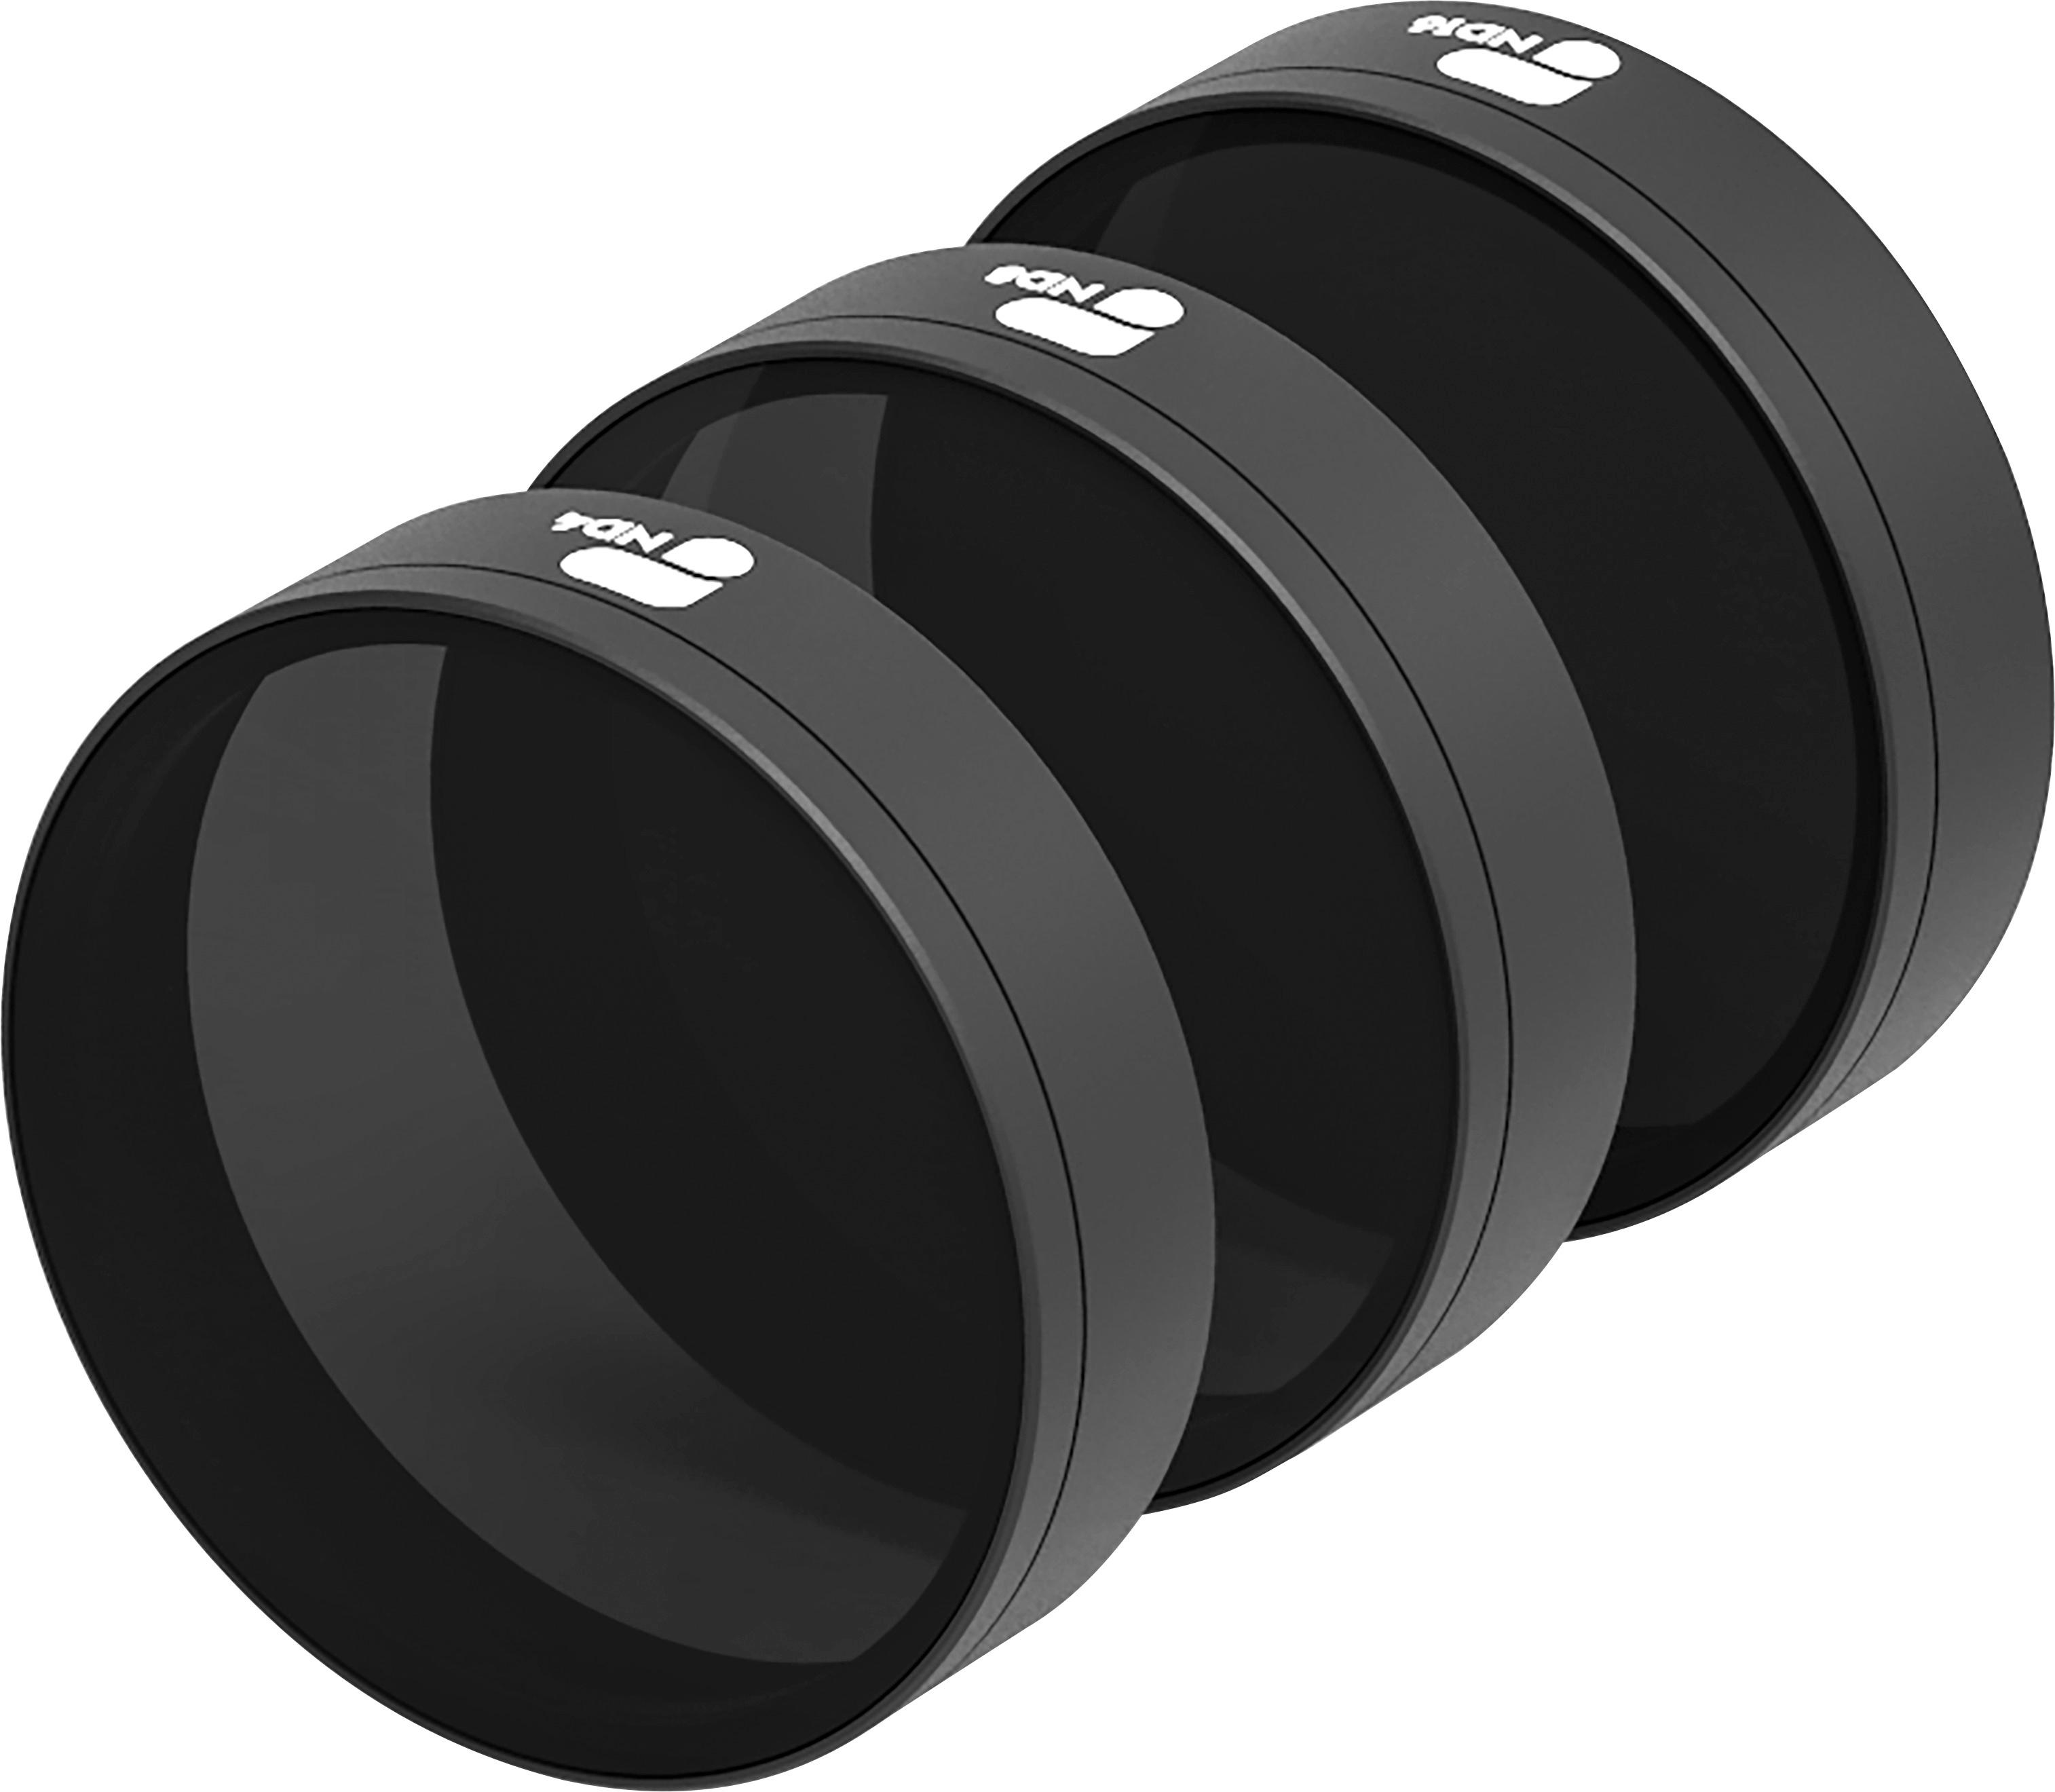 PolarPro 25.4mm Neutral Density Lens Filters for DJI Phantom 4 Pro 3-Pack 